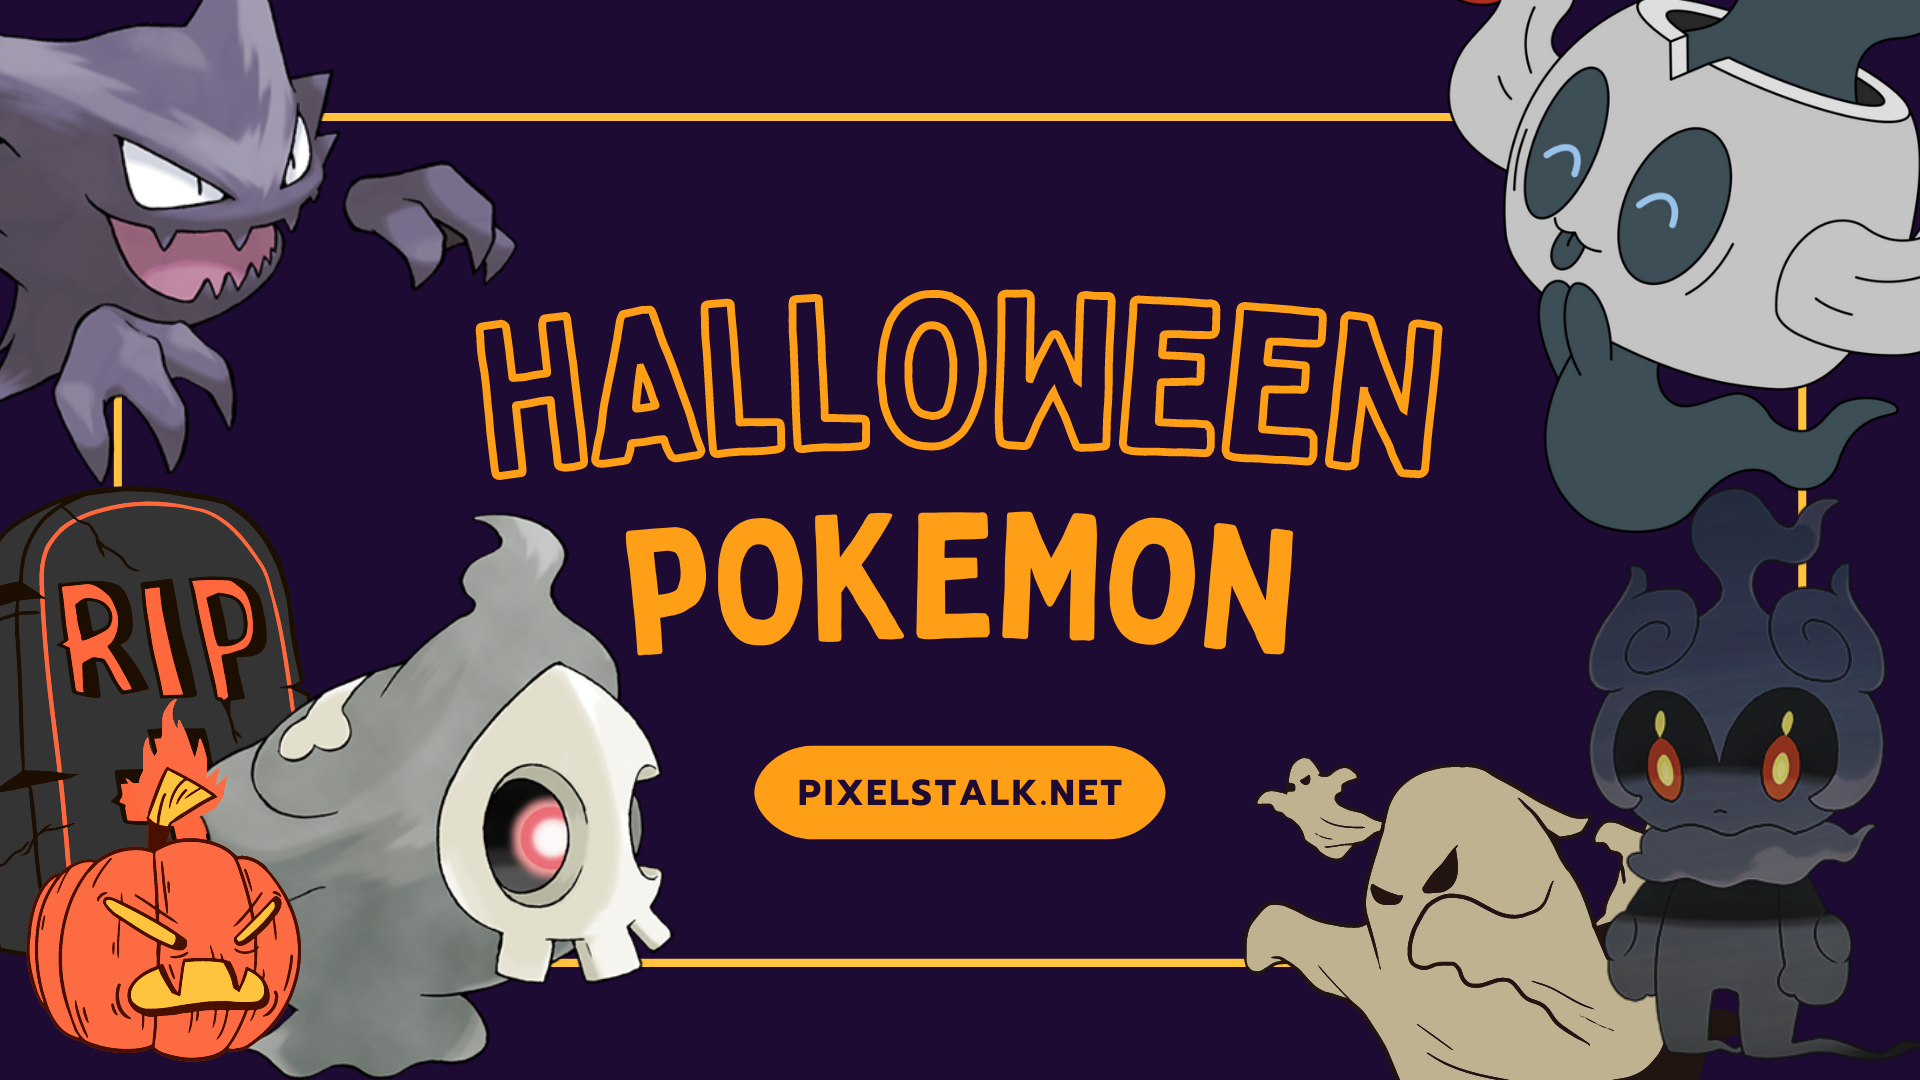 Halloween Pokemon: Chuẩn bị cho một mùa Halloween thú vị với những chú Pokémon đáng yêu. Hãy xem các Pokémon yêu thích của bạn ăn mặc và tham gia vào các hoạt động Halloween. Với một chút ma mị, hình ảnh của các chú Pokémon cũng có thể trở nên đáng sợ và bạn sẽ không muốn bỏ lỡ chúng!